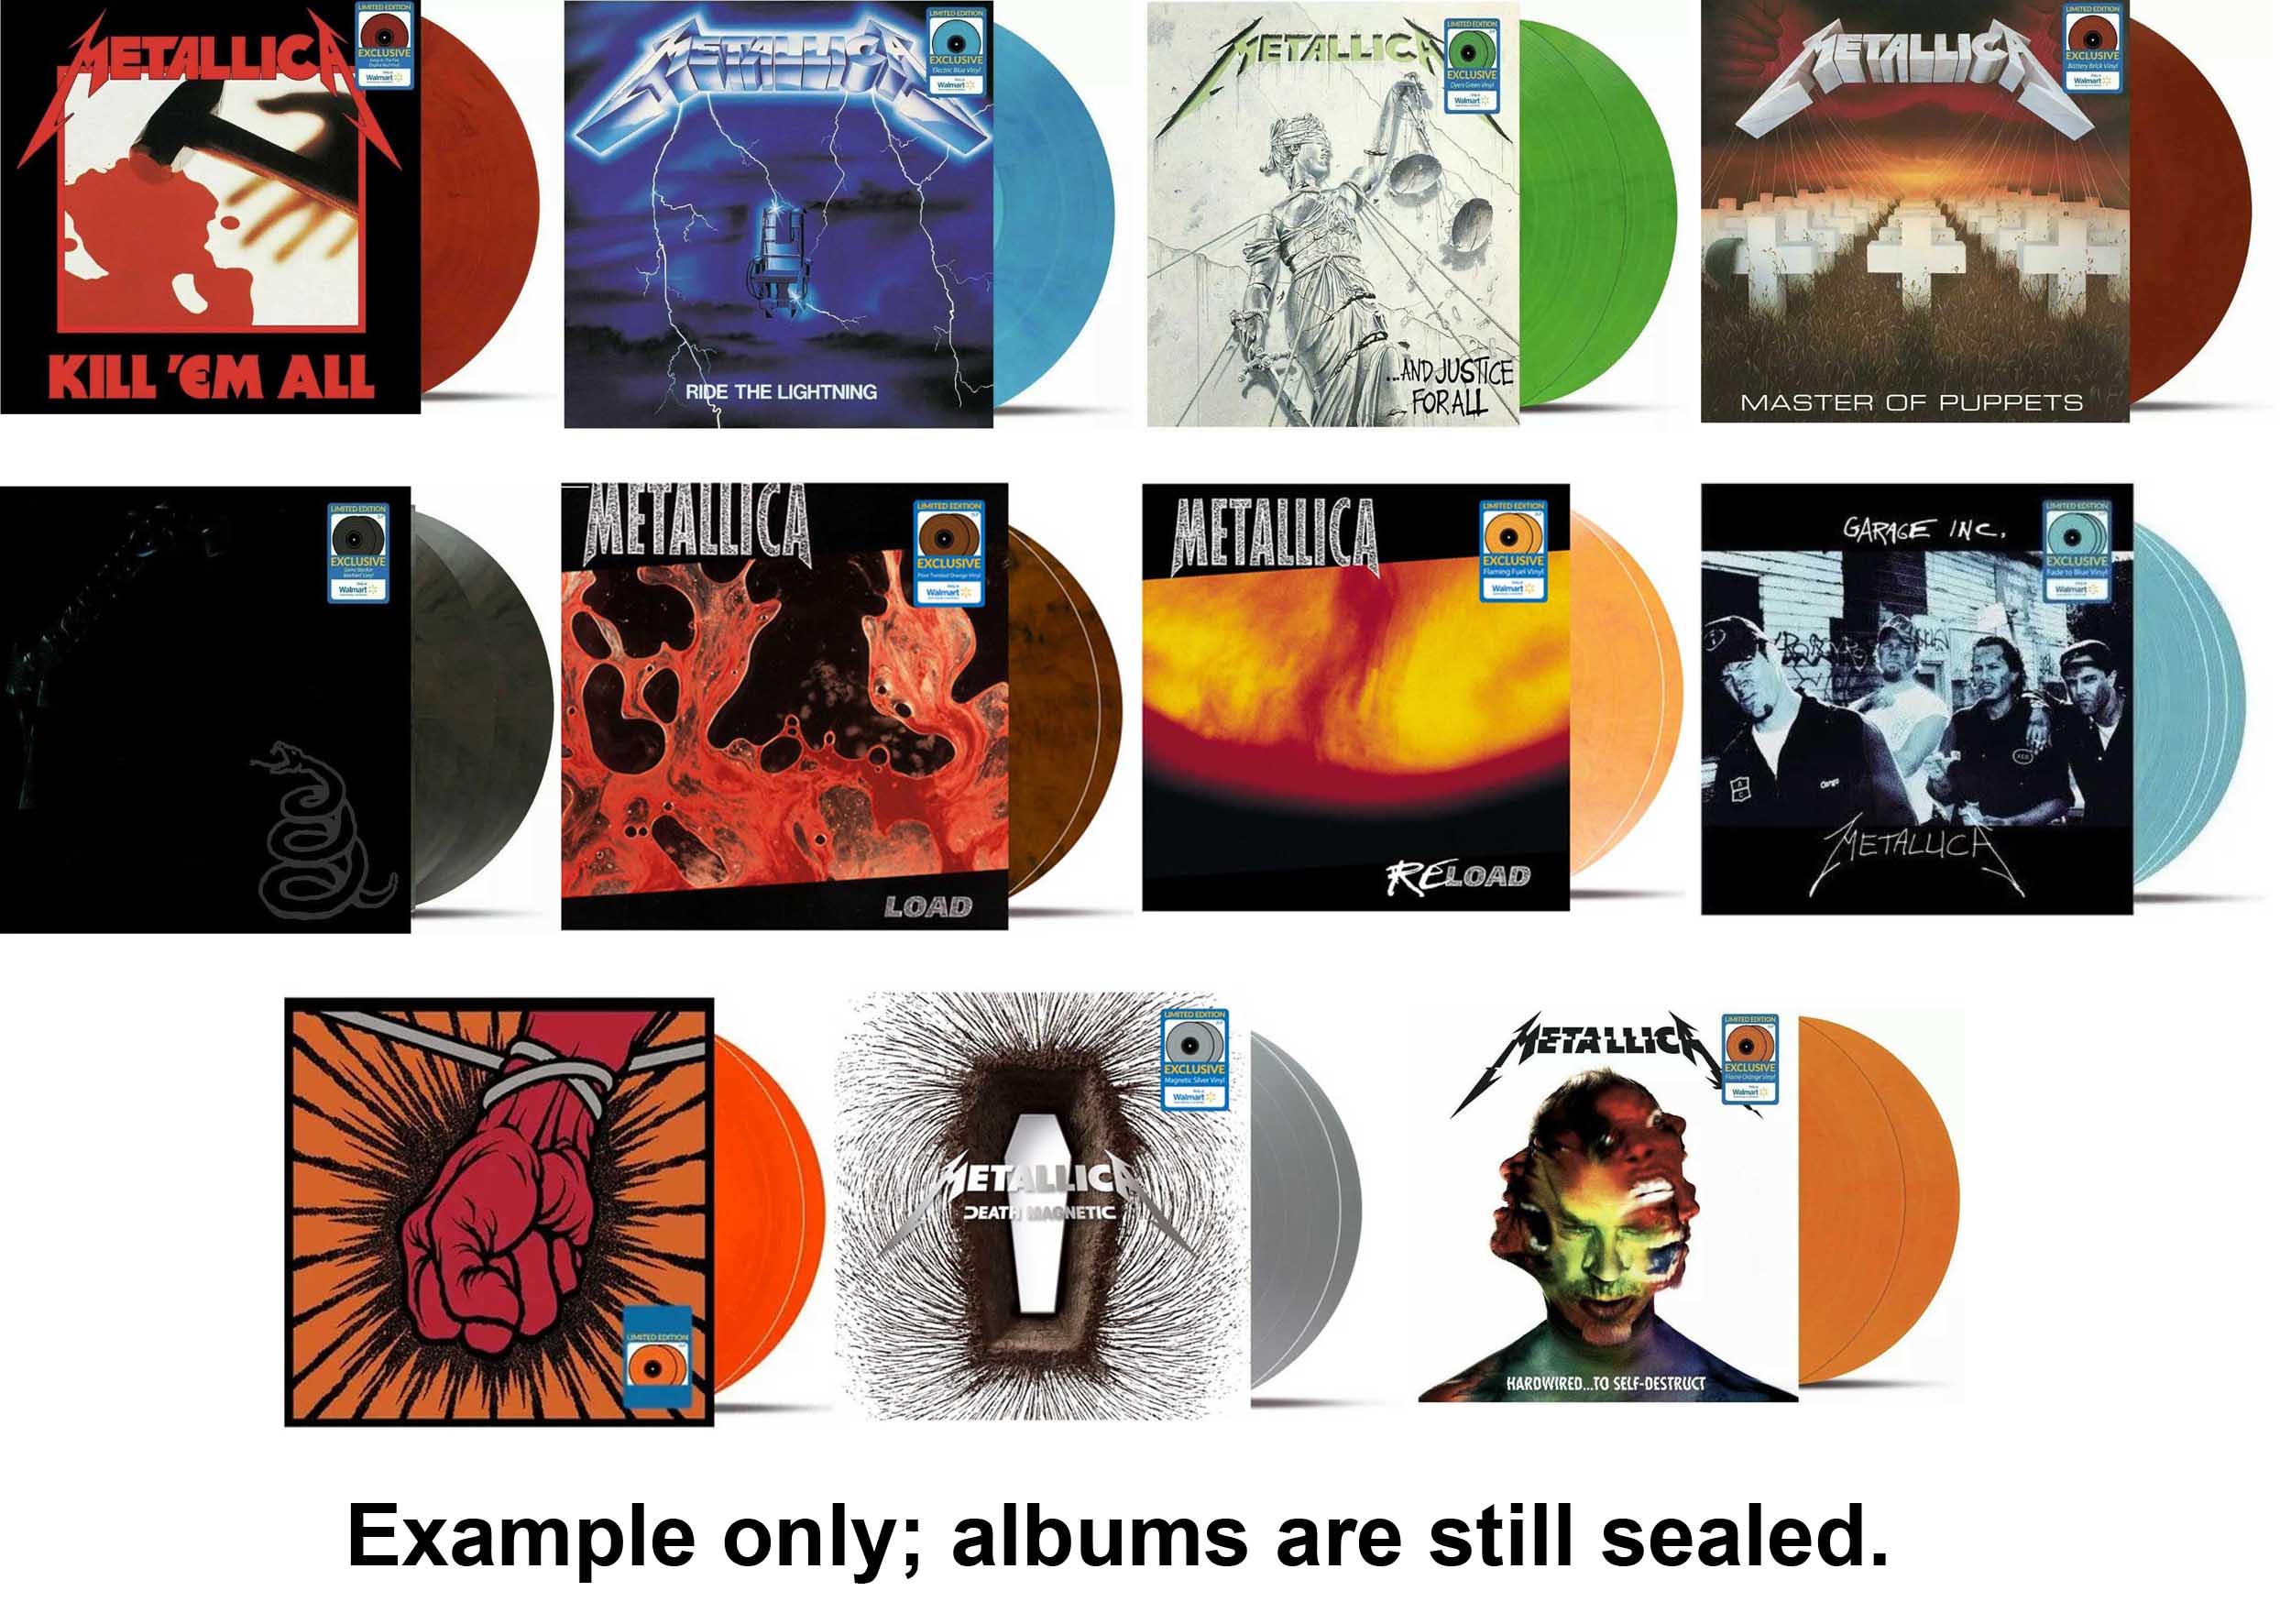 Metallica Vinyl Set All 6 Walmart Exclusives